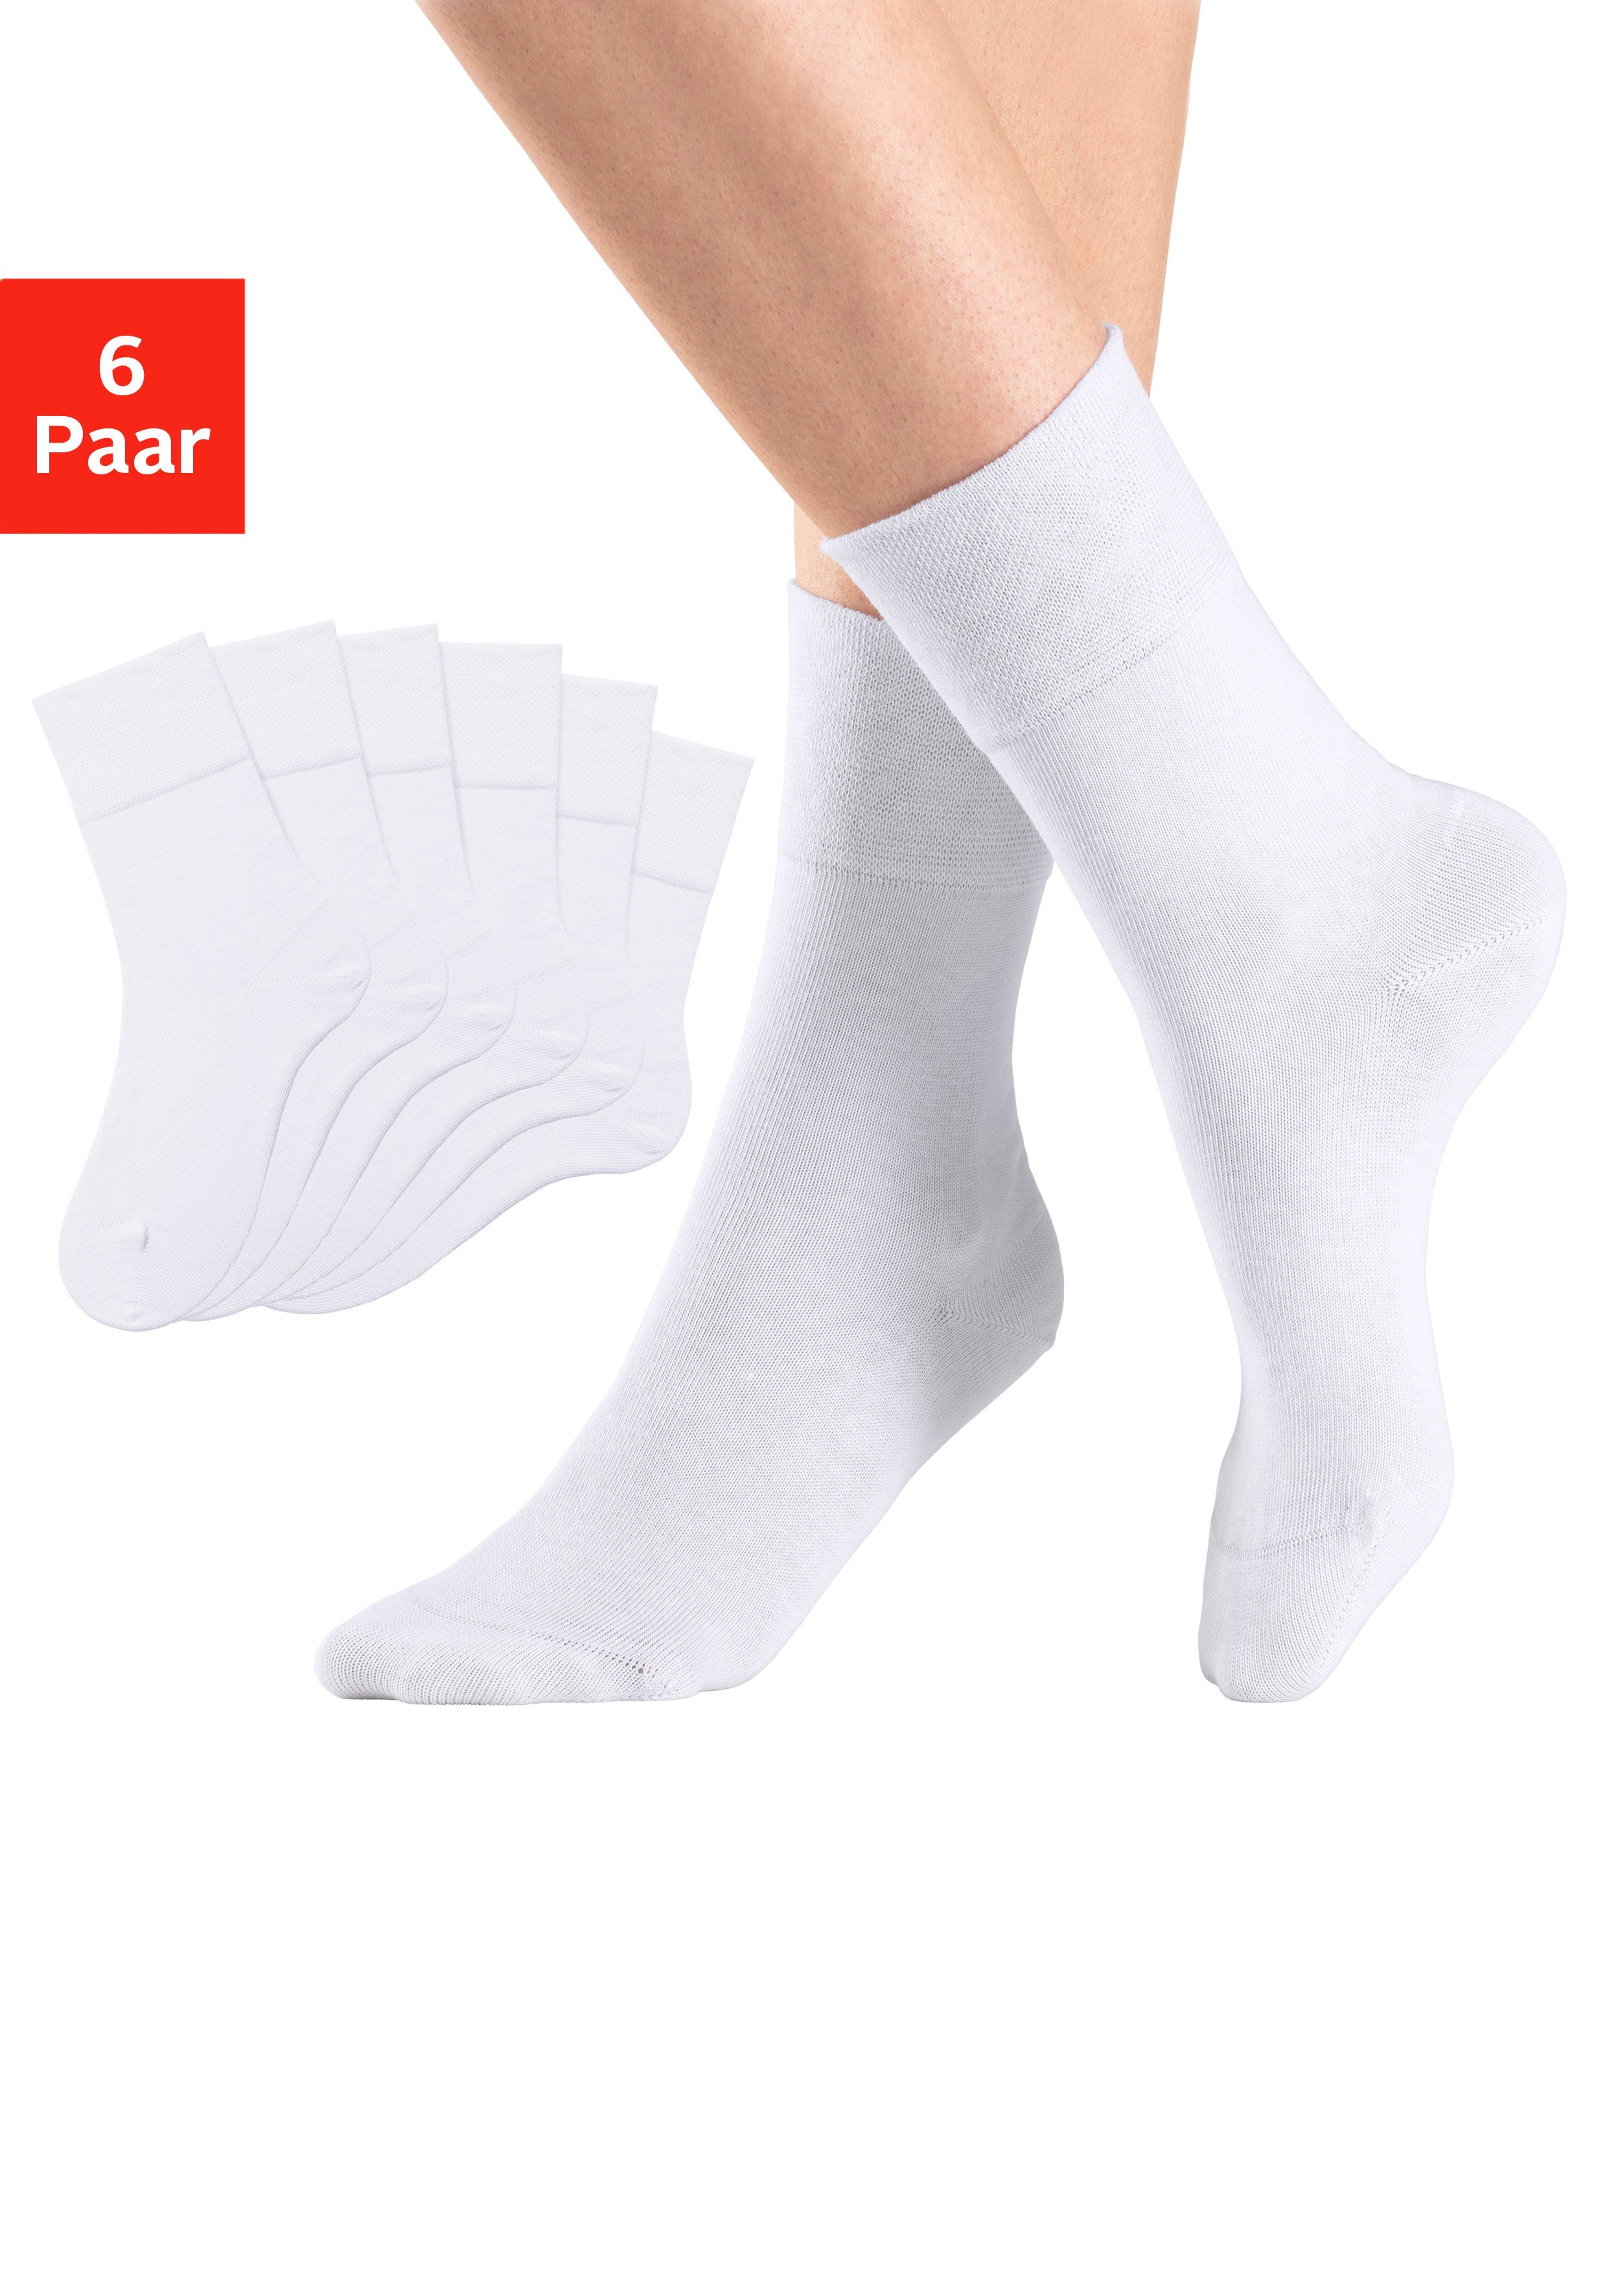 H.I.S Socken (Set, 6-Paar) mit Komfortbund auch für Diabetiker geeignet 6x weiß